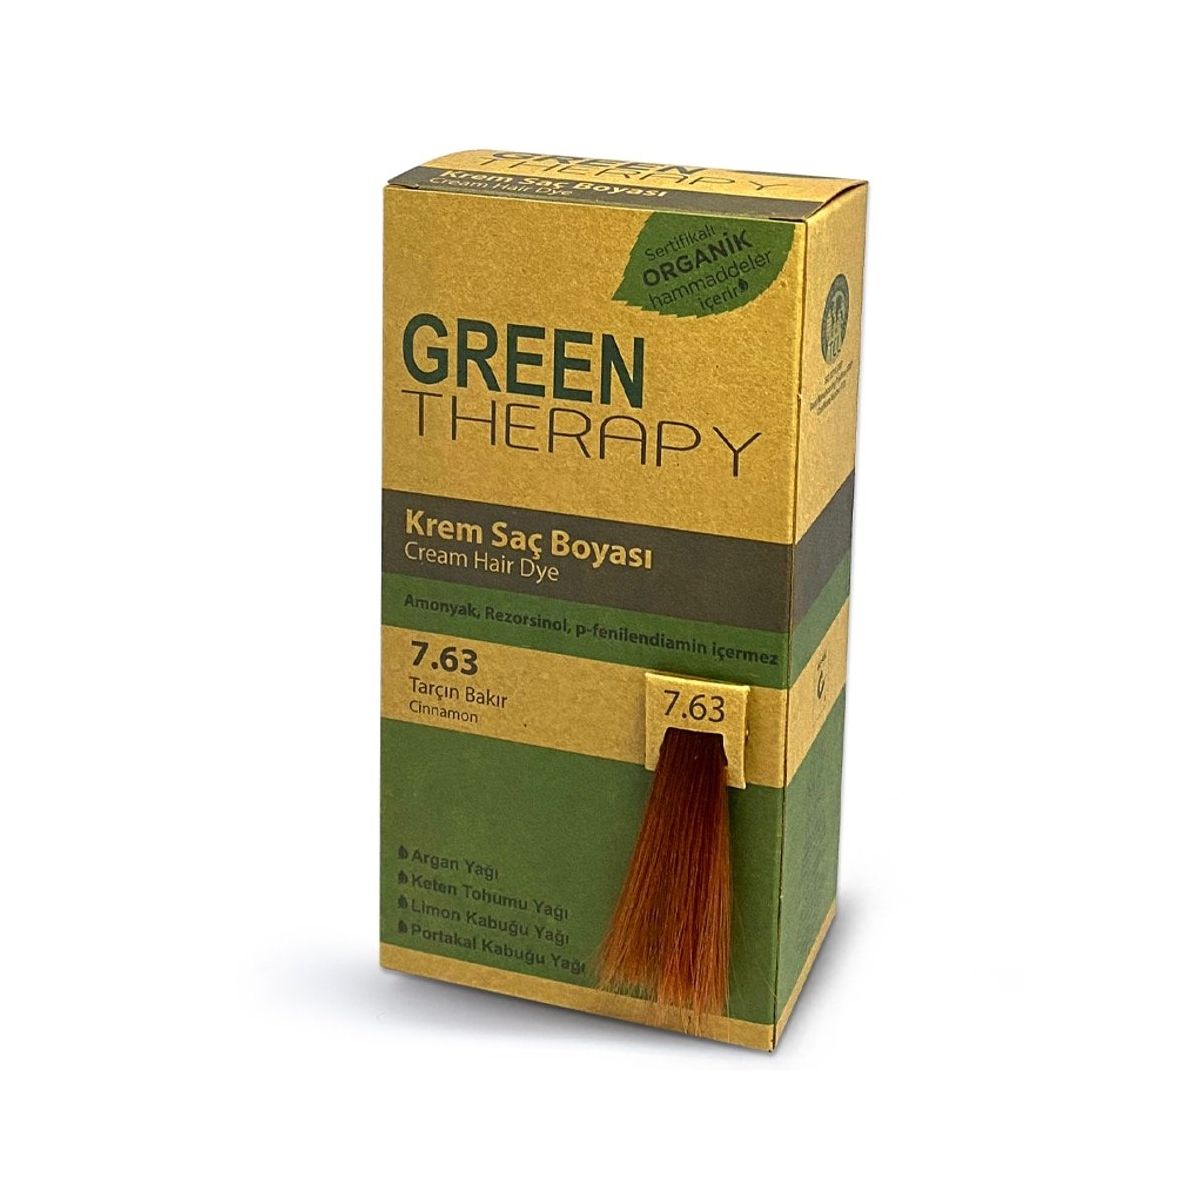 Green Therapy Sac Boyasi Fiyatlari